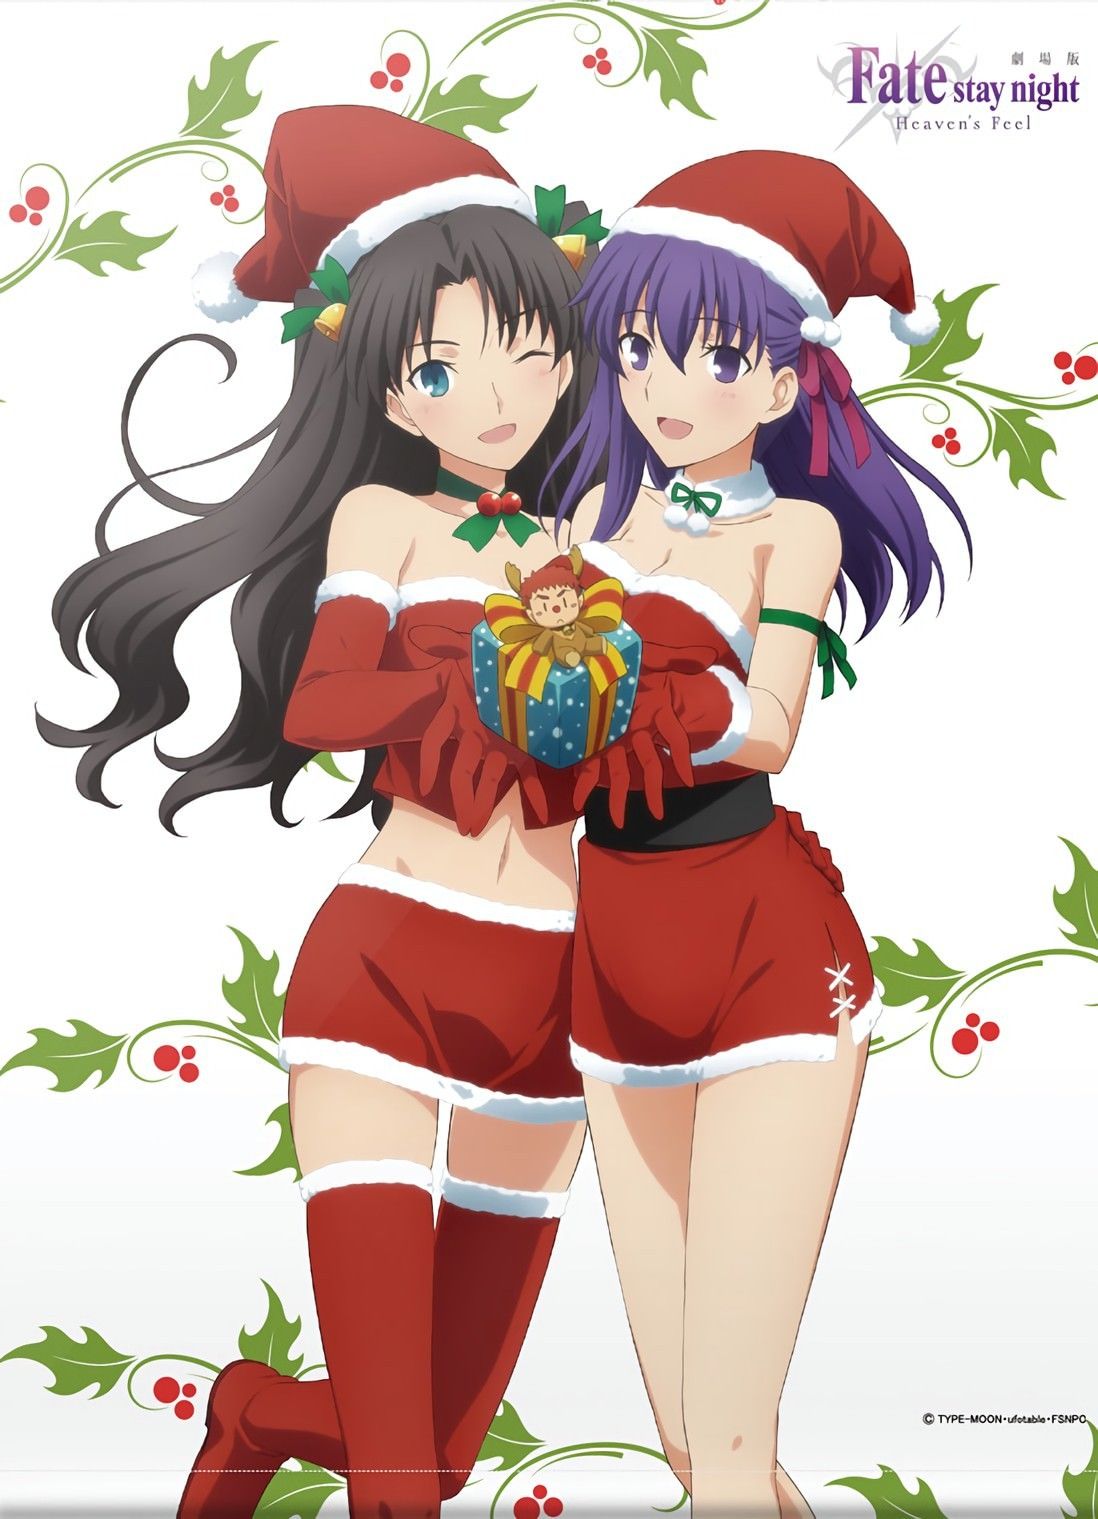 Sakura Matou and Rin Tohsaka in christmas outfits: Fate series (Artist: Type-moon)